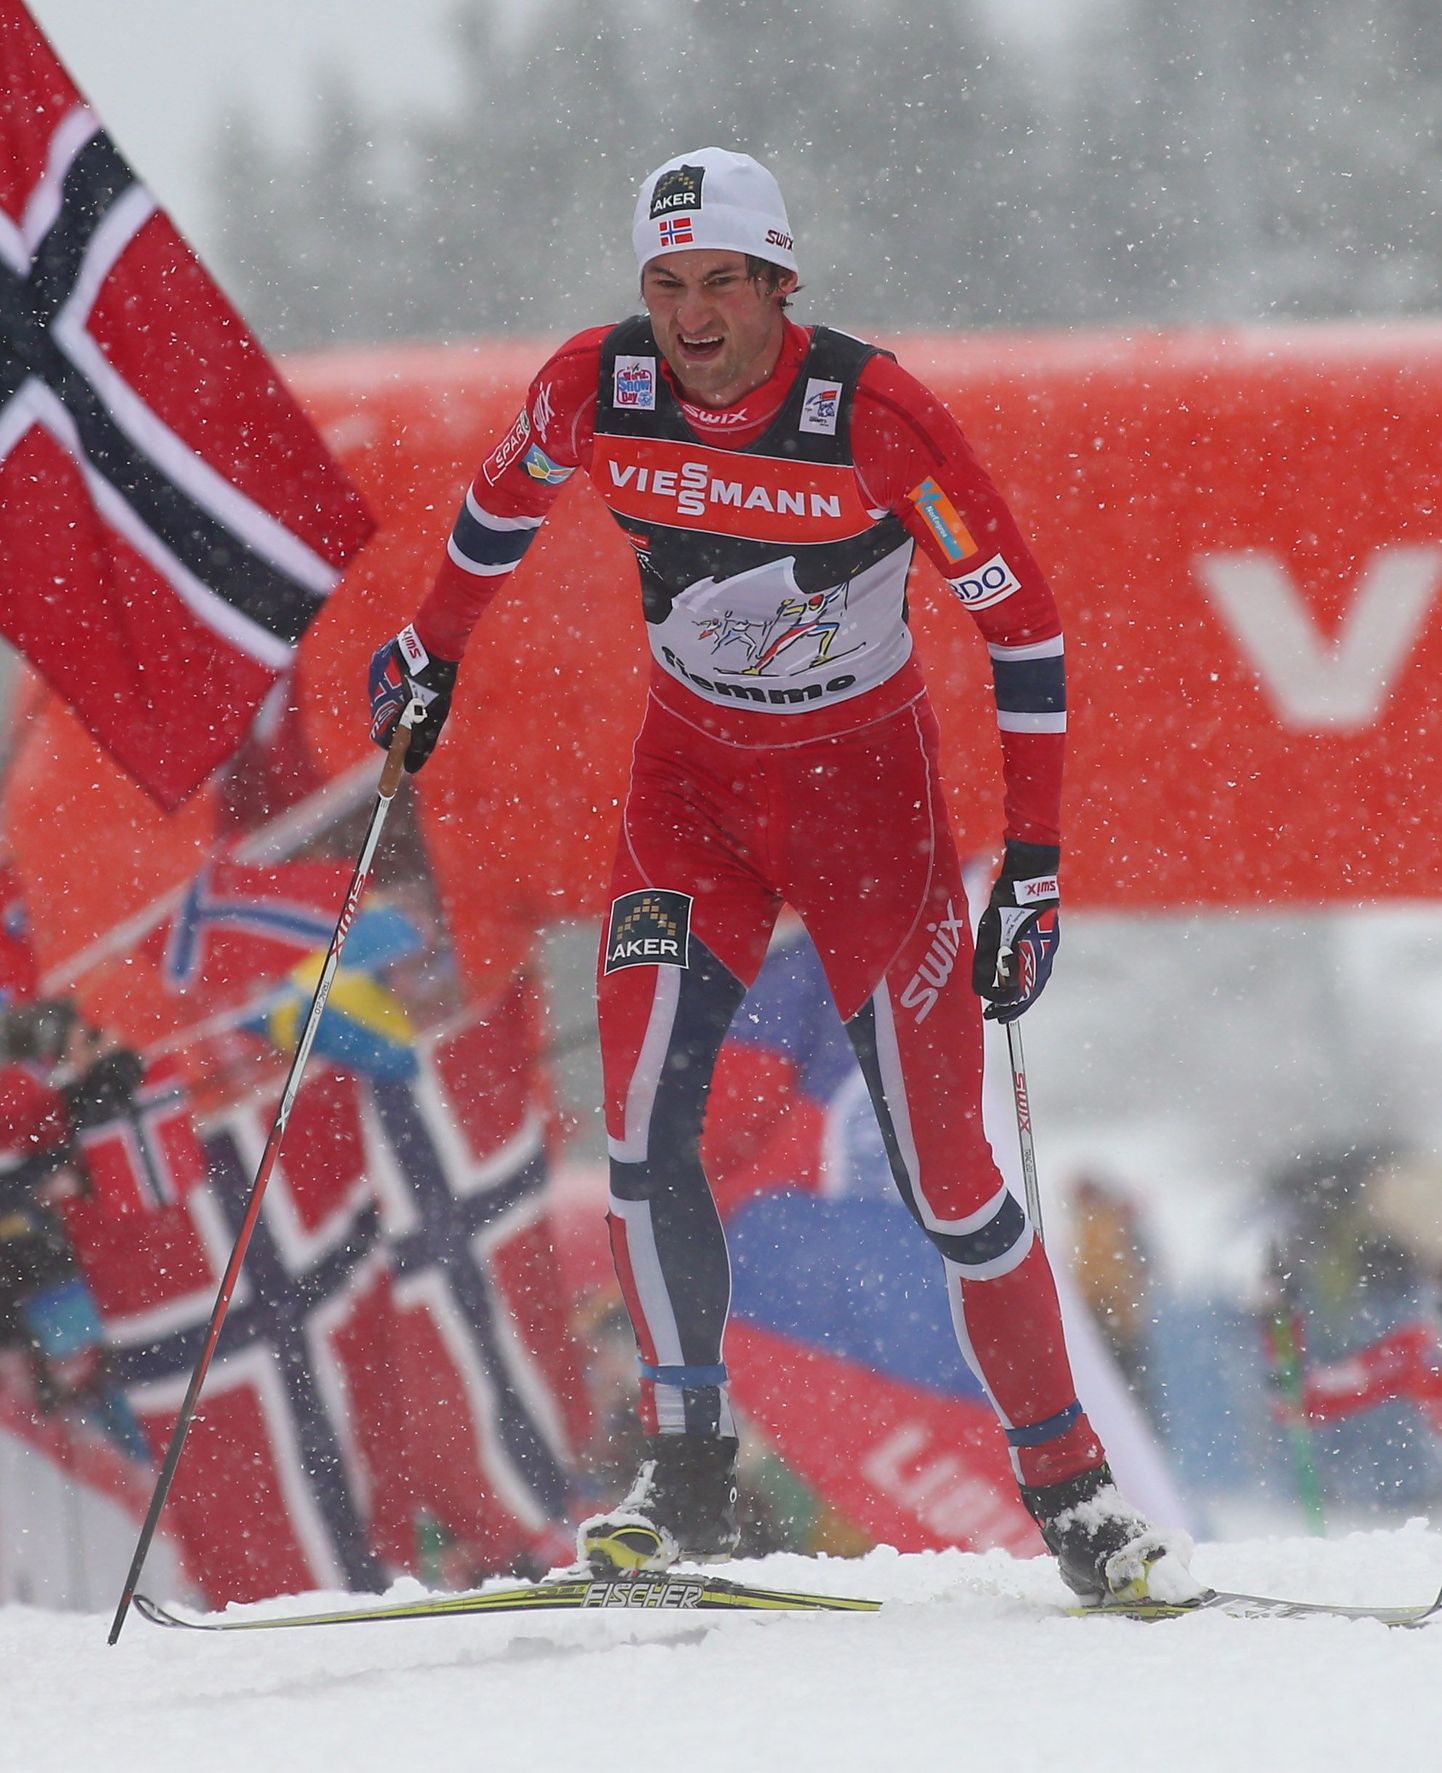 Tour de Ski viimast etappi teisena alustanud Petter Northug sai lõpuks kokkuvõttes neljanda koha.